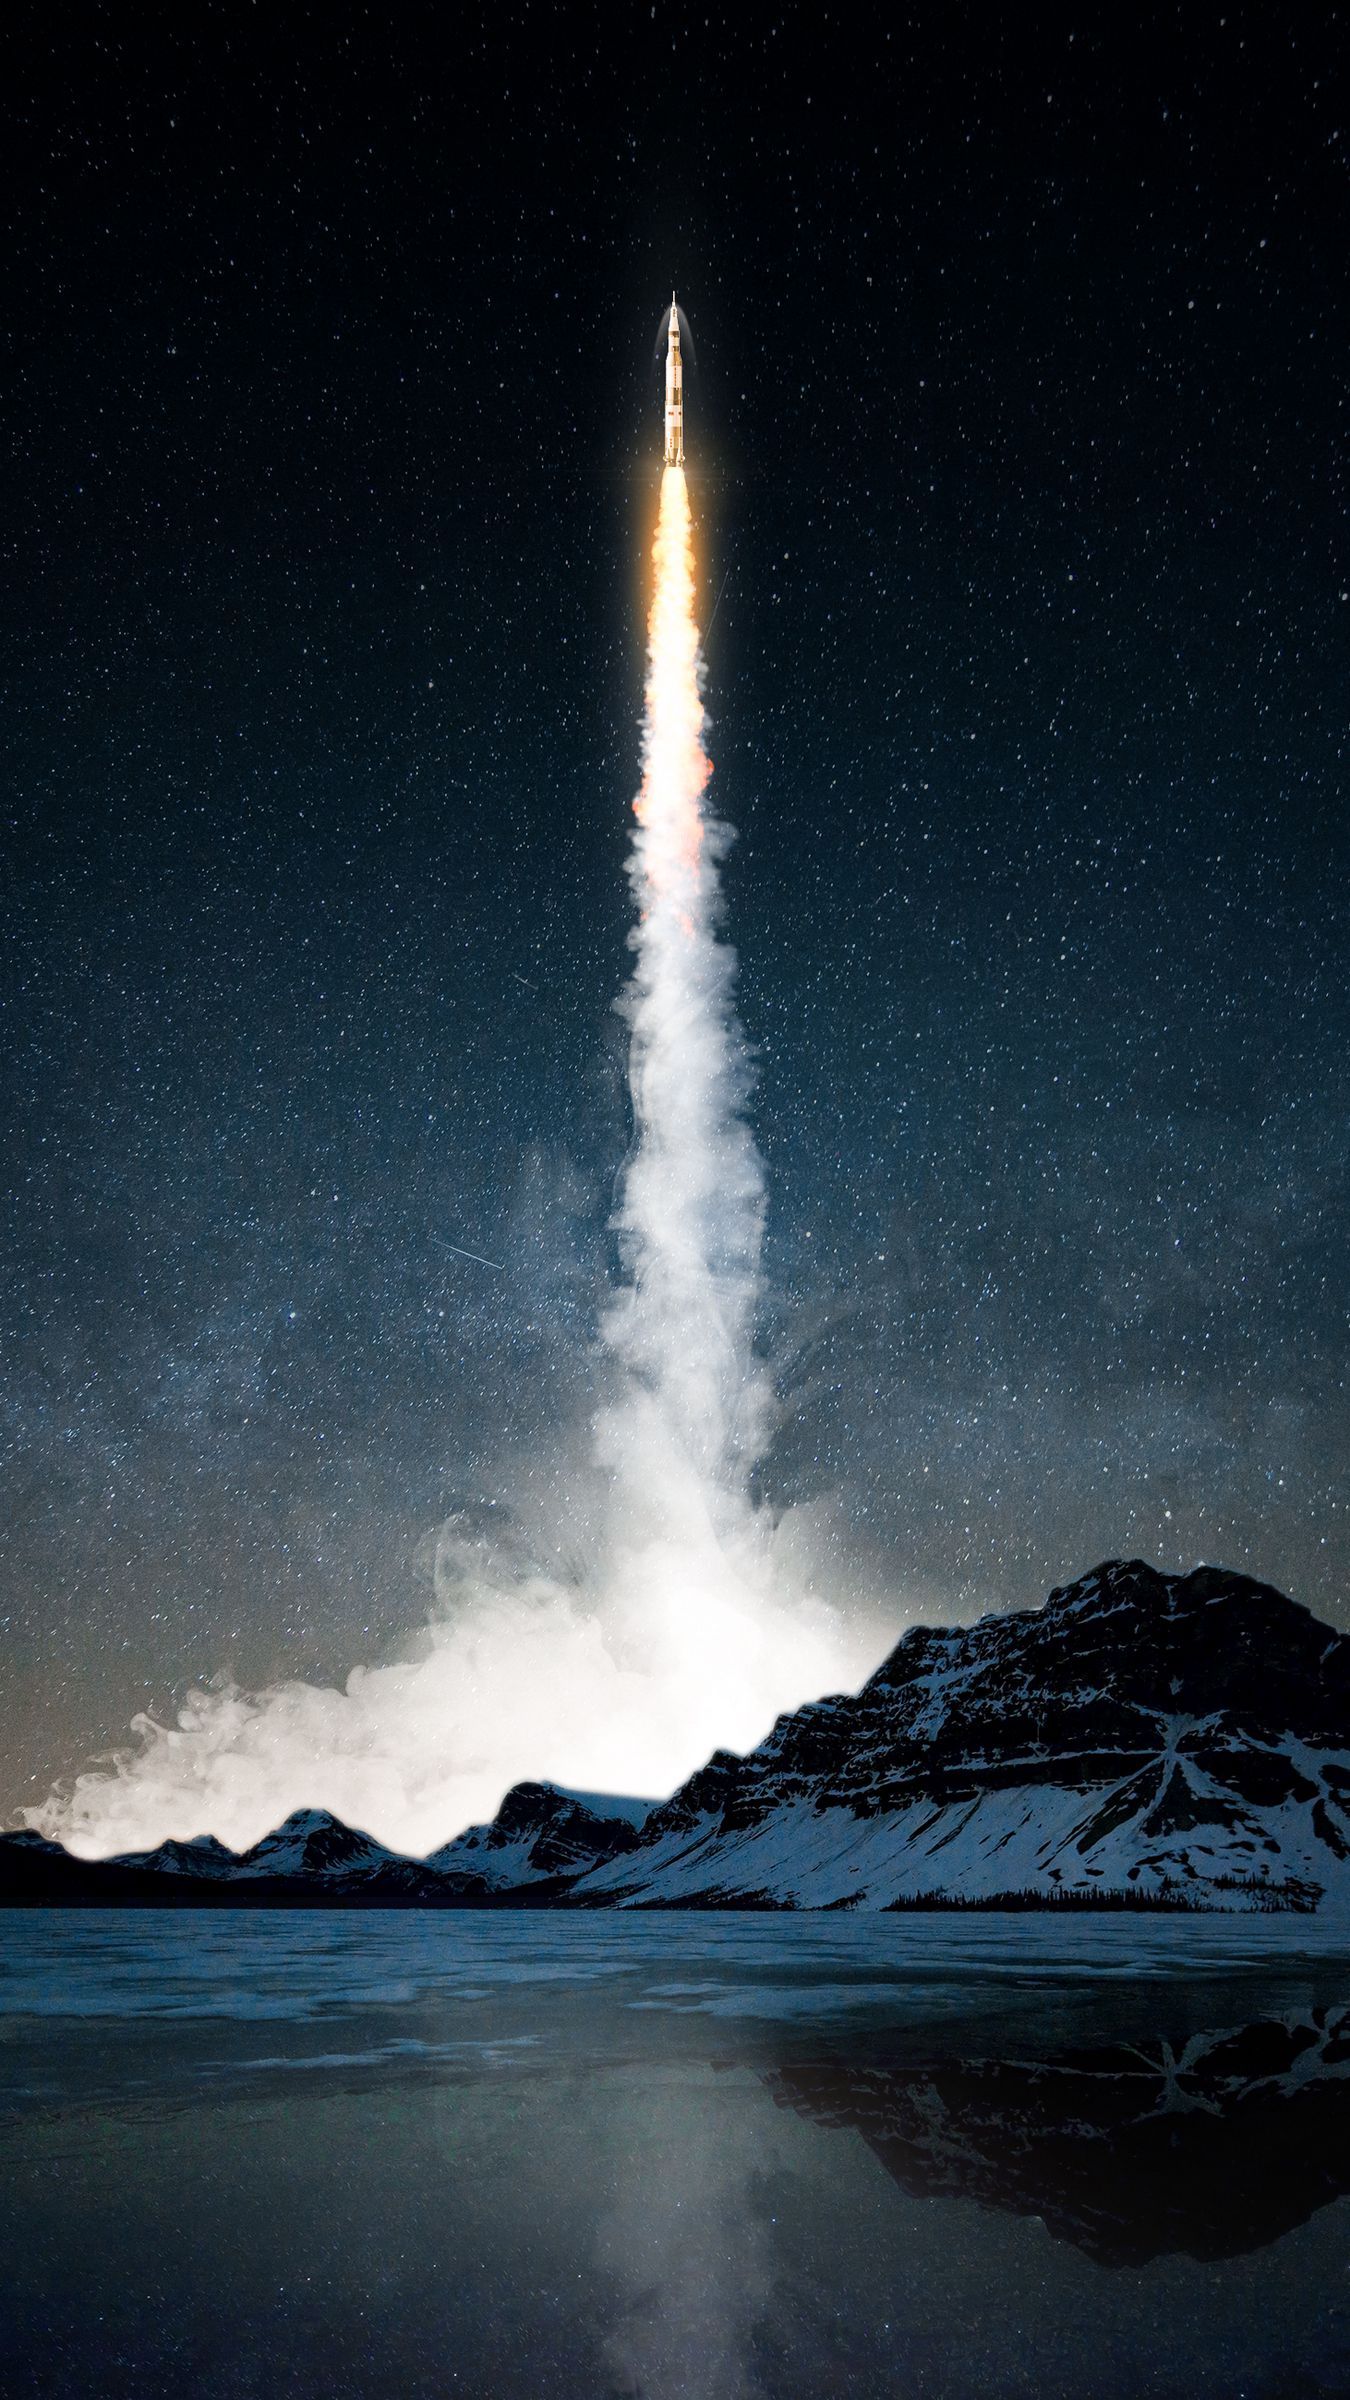 عکس جالب و دیدنی از موشک فضایی در کنار کوه بلند و برفی 